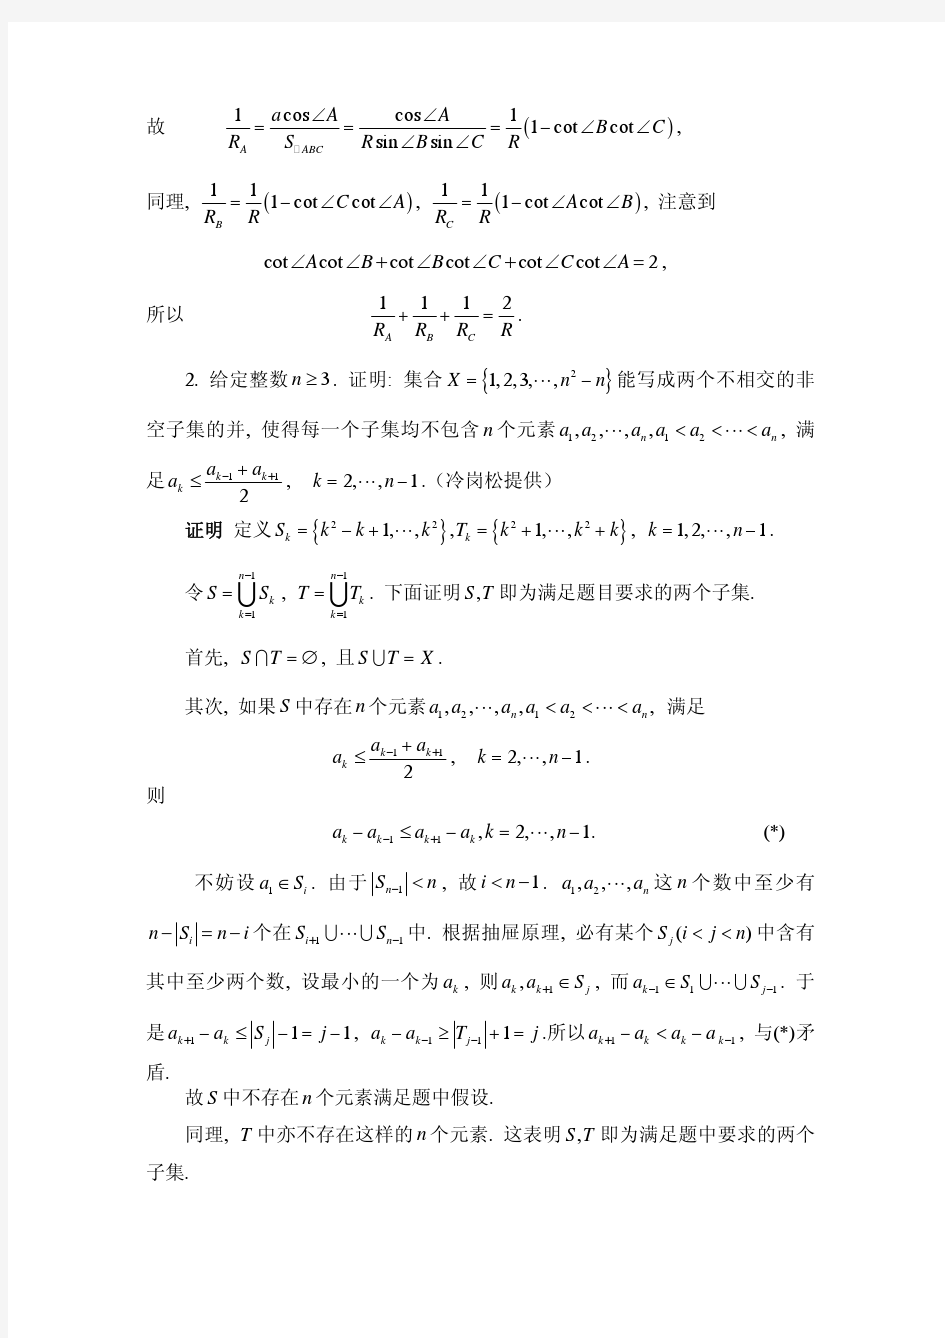 2008中国数学奥林匹克(第23届全国数学冬令营)试题解答